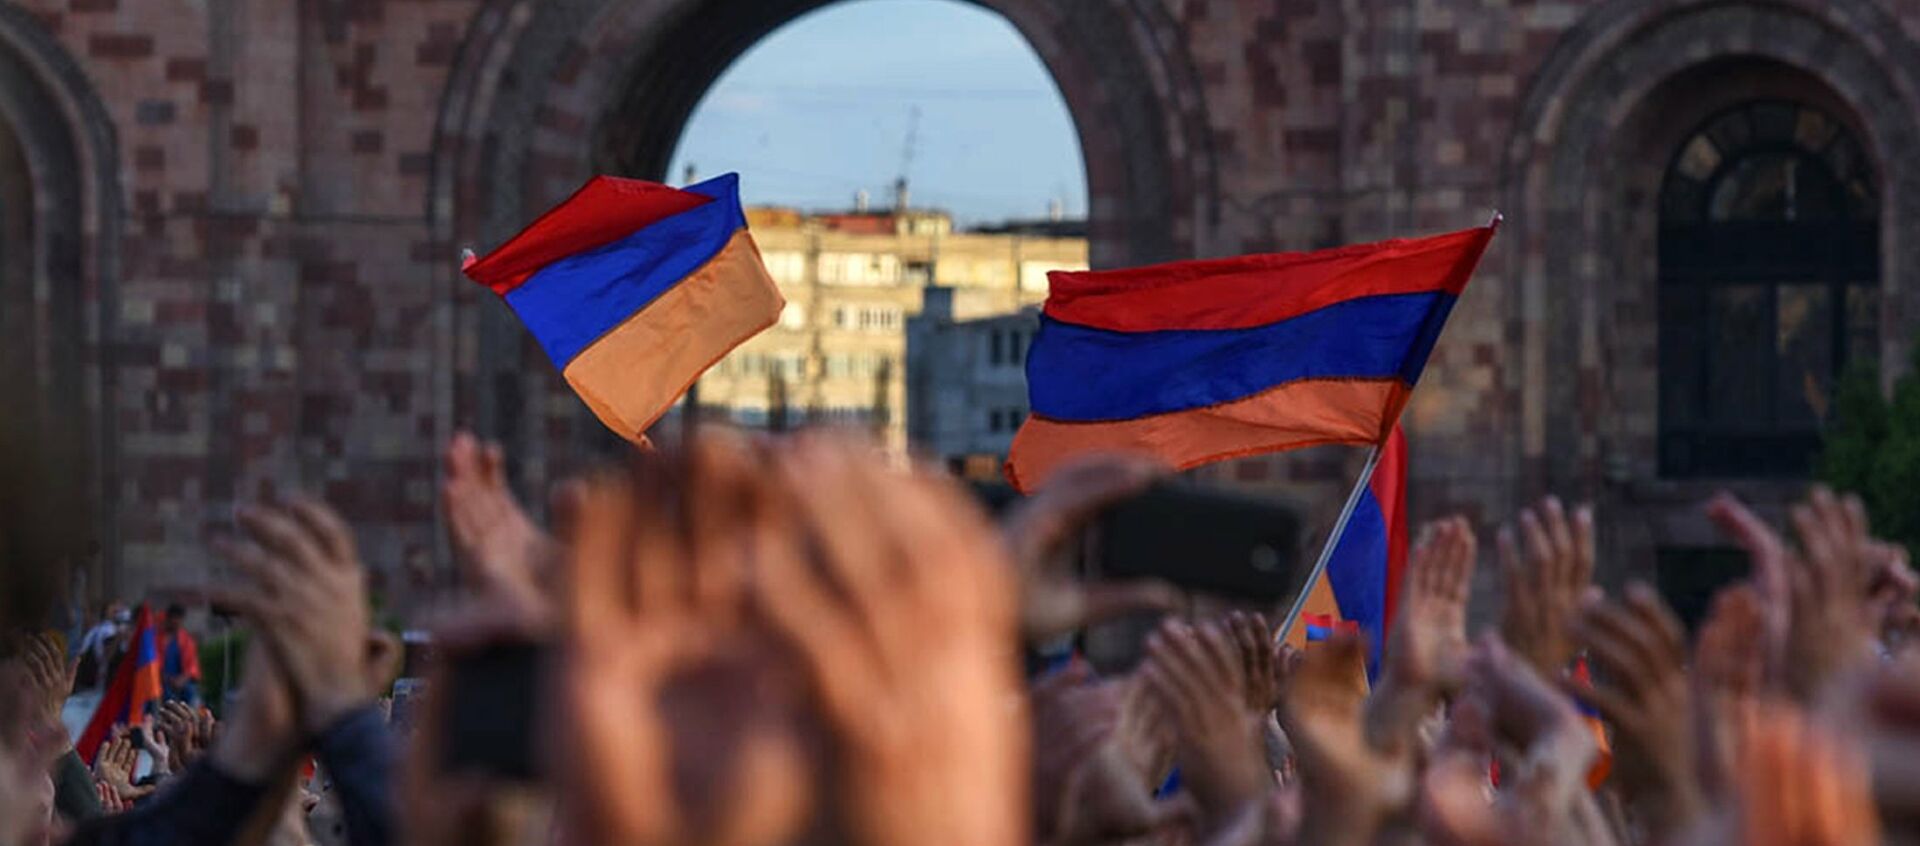 Πρόωρες βουλευτικές εκλογές στην Αρμενία: Άνοιξαν σήμερα οι κάλπες στον απόηχο της ήττας στο Ναγκόρνο-Καραμπάχ